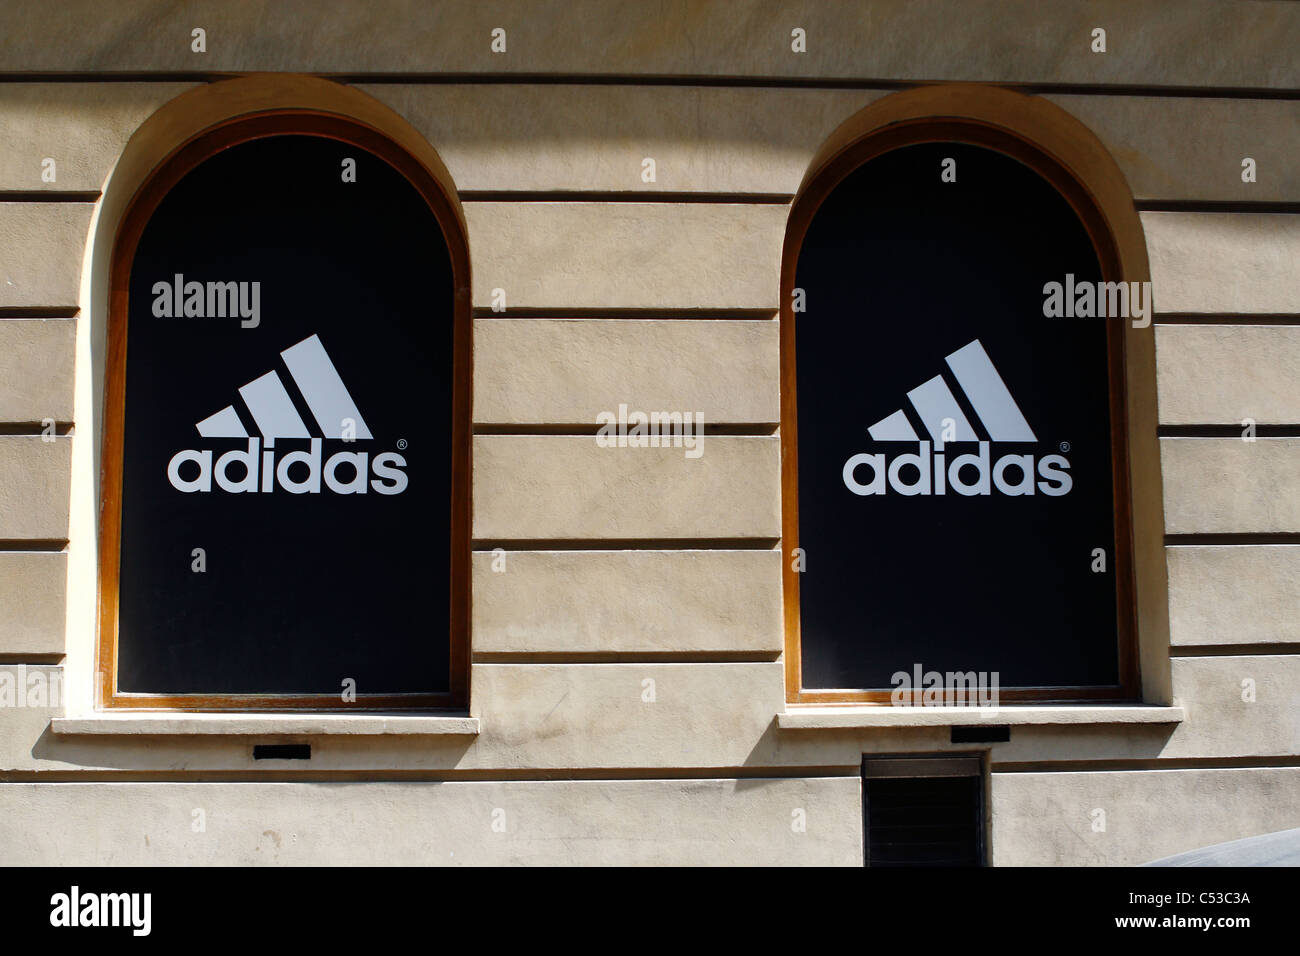 Adidas speichern, großes Logo auf Schaufenster, Krakau, Polen  Stockfotografie - Alamy